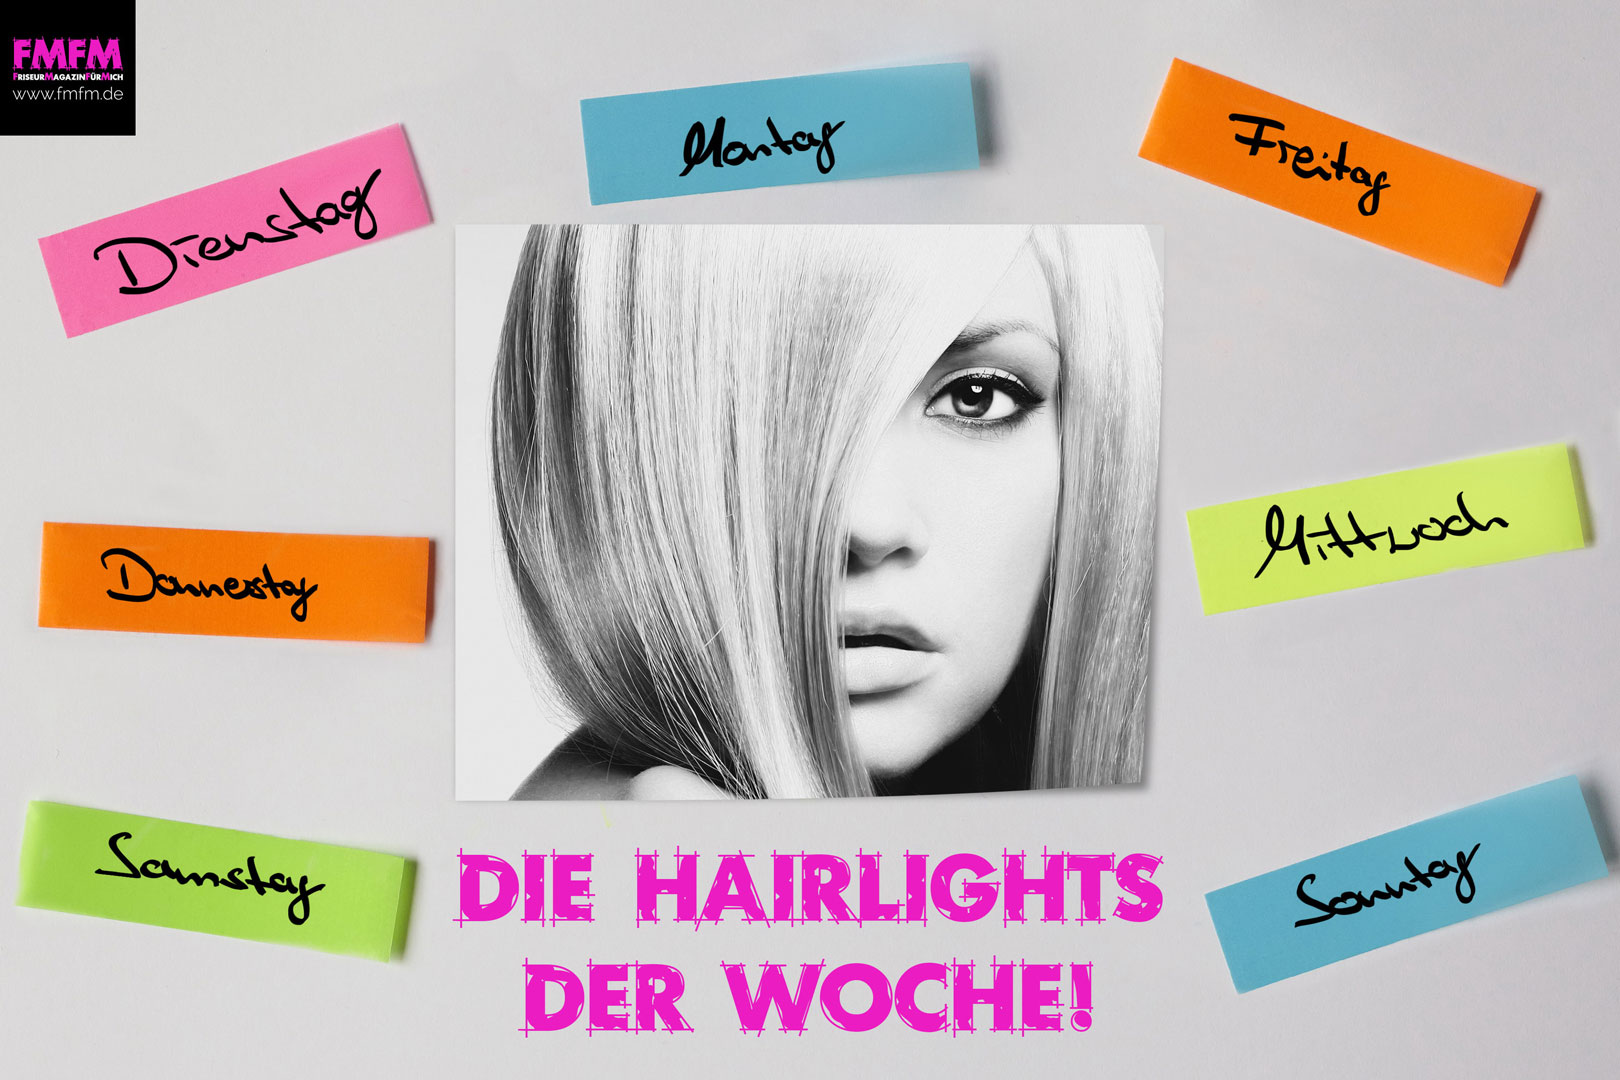 Die-Hairlights-der-Woche-KW-26-1298-1